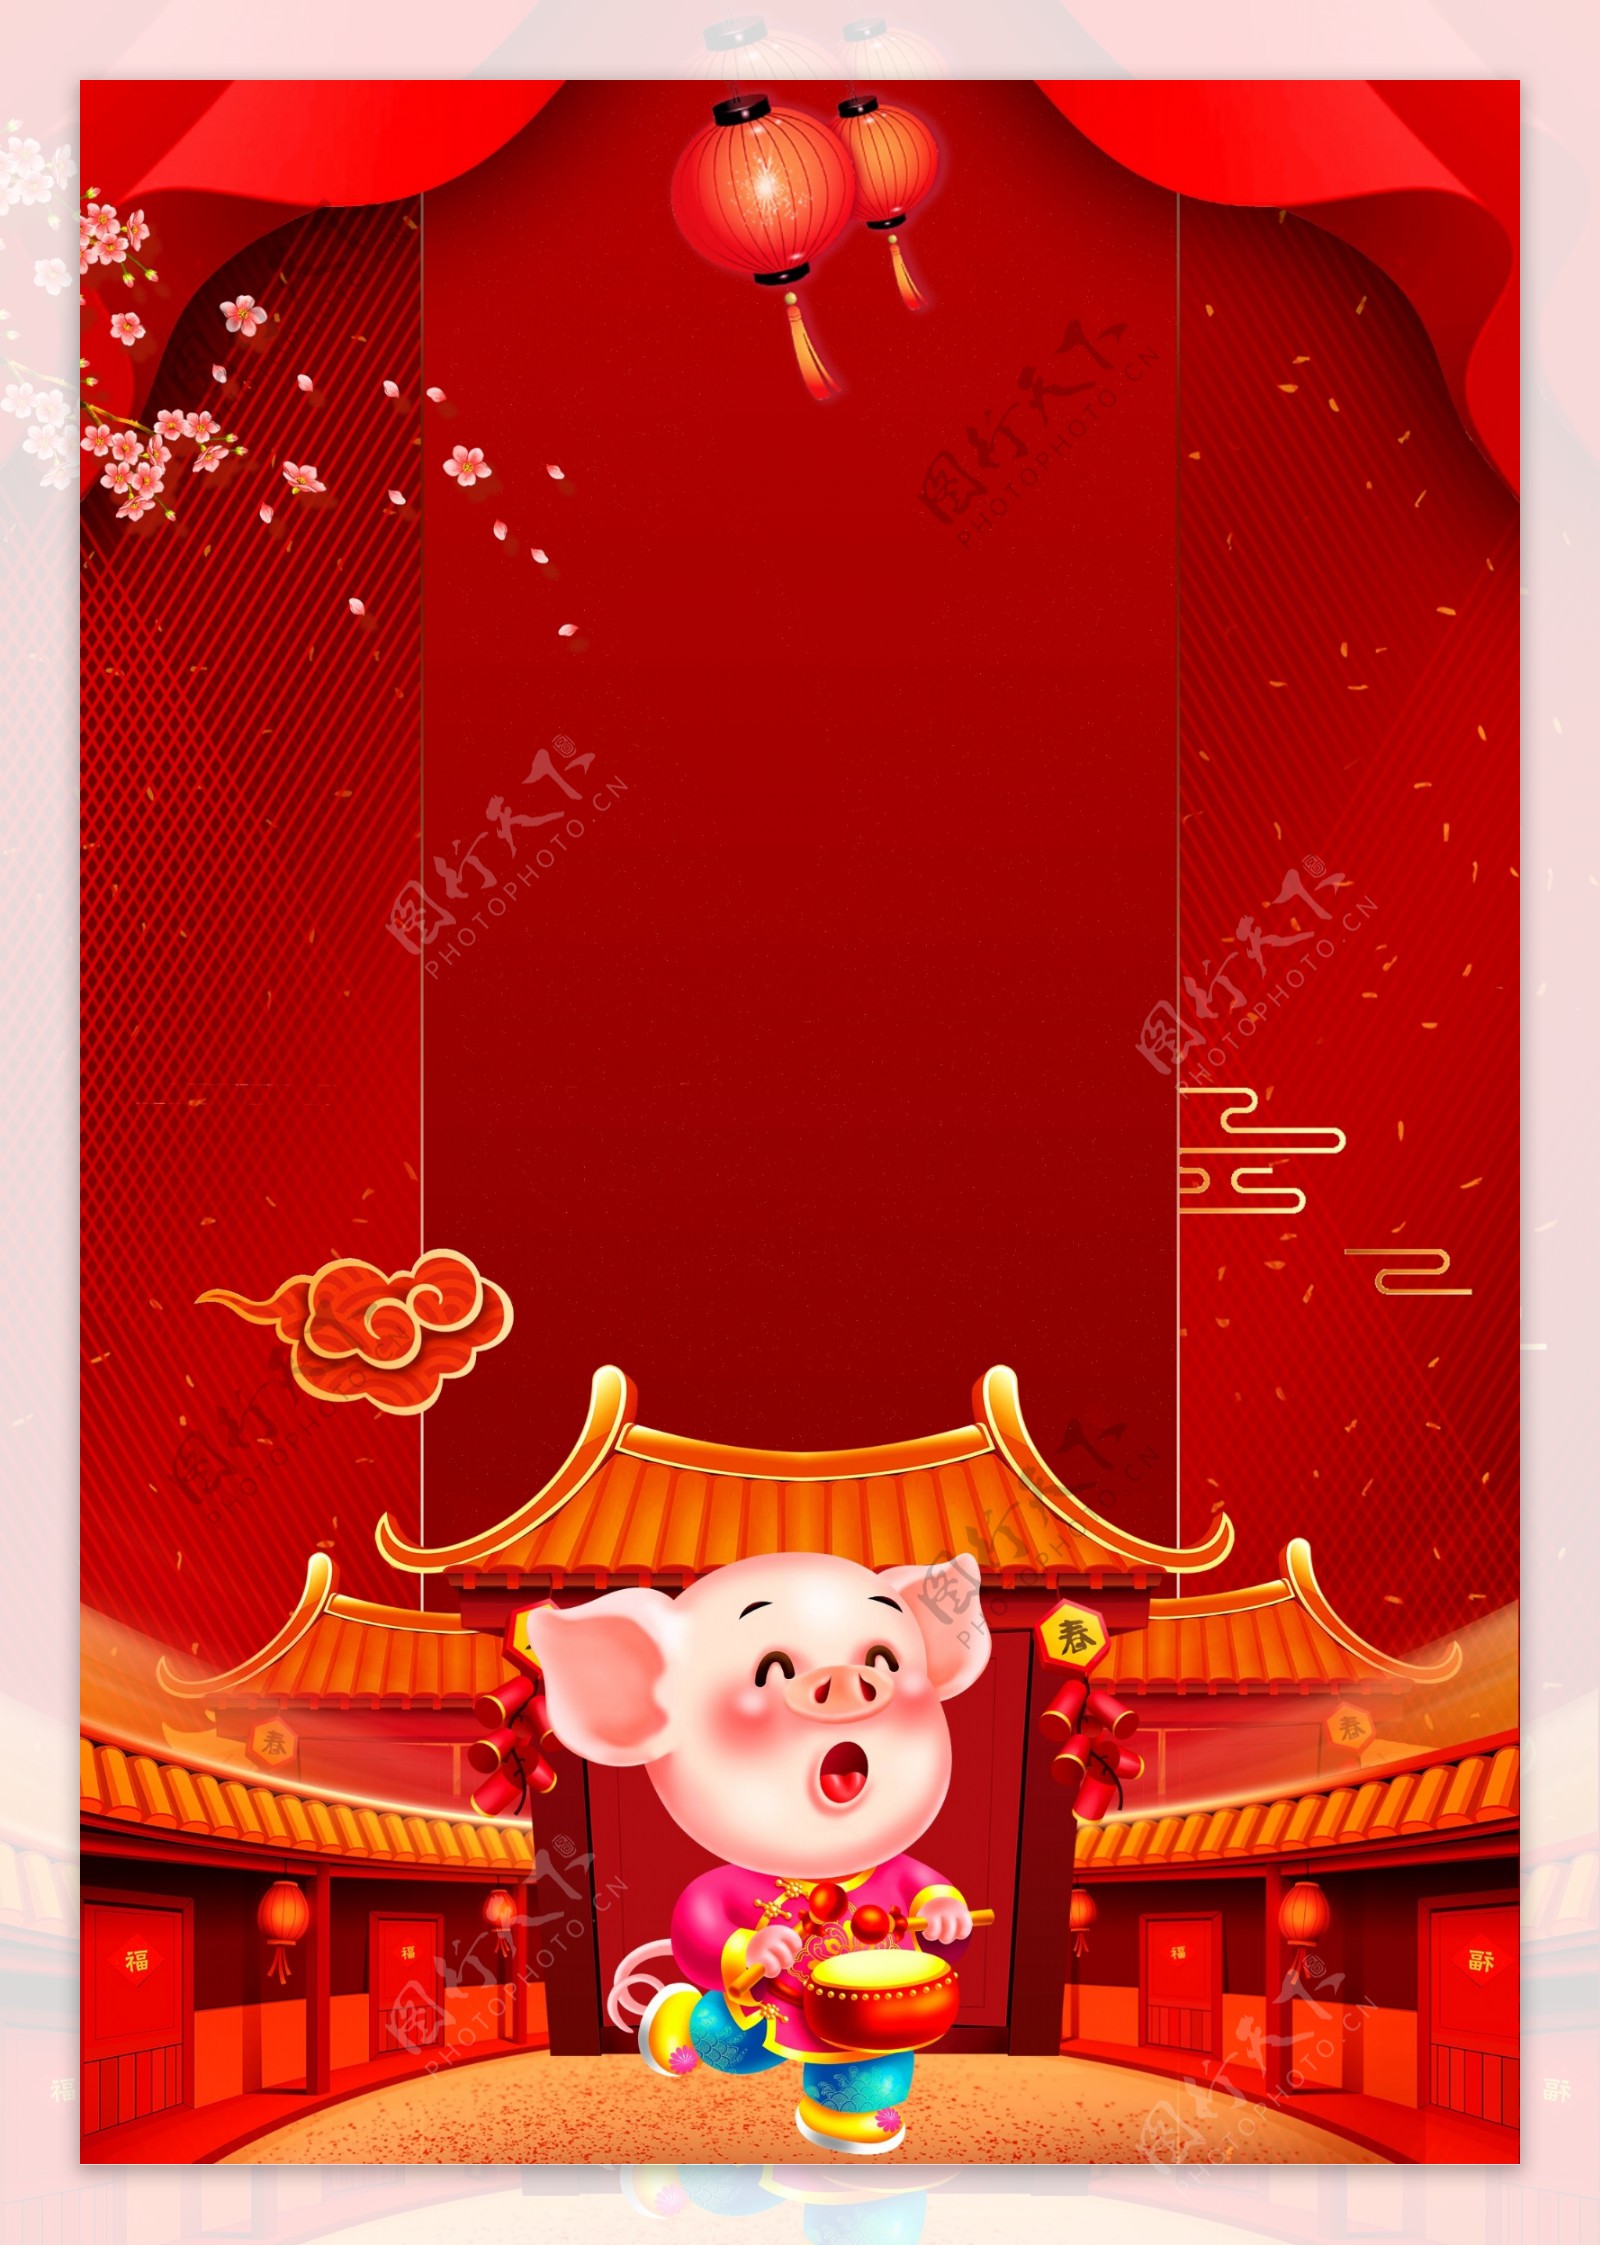 中国风红色猪年背景素材